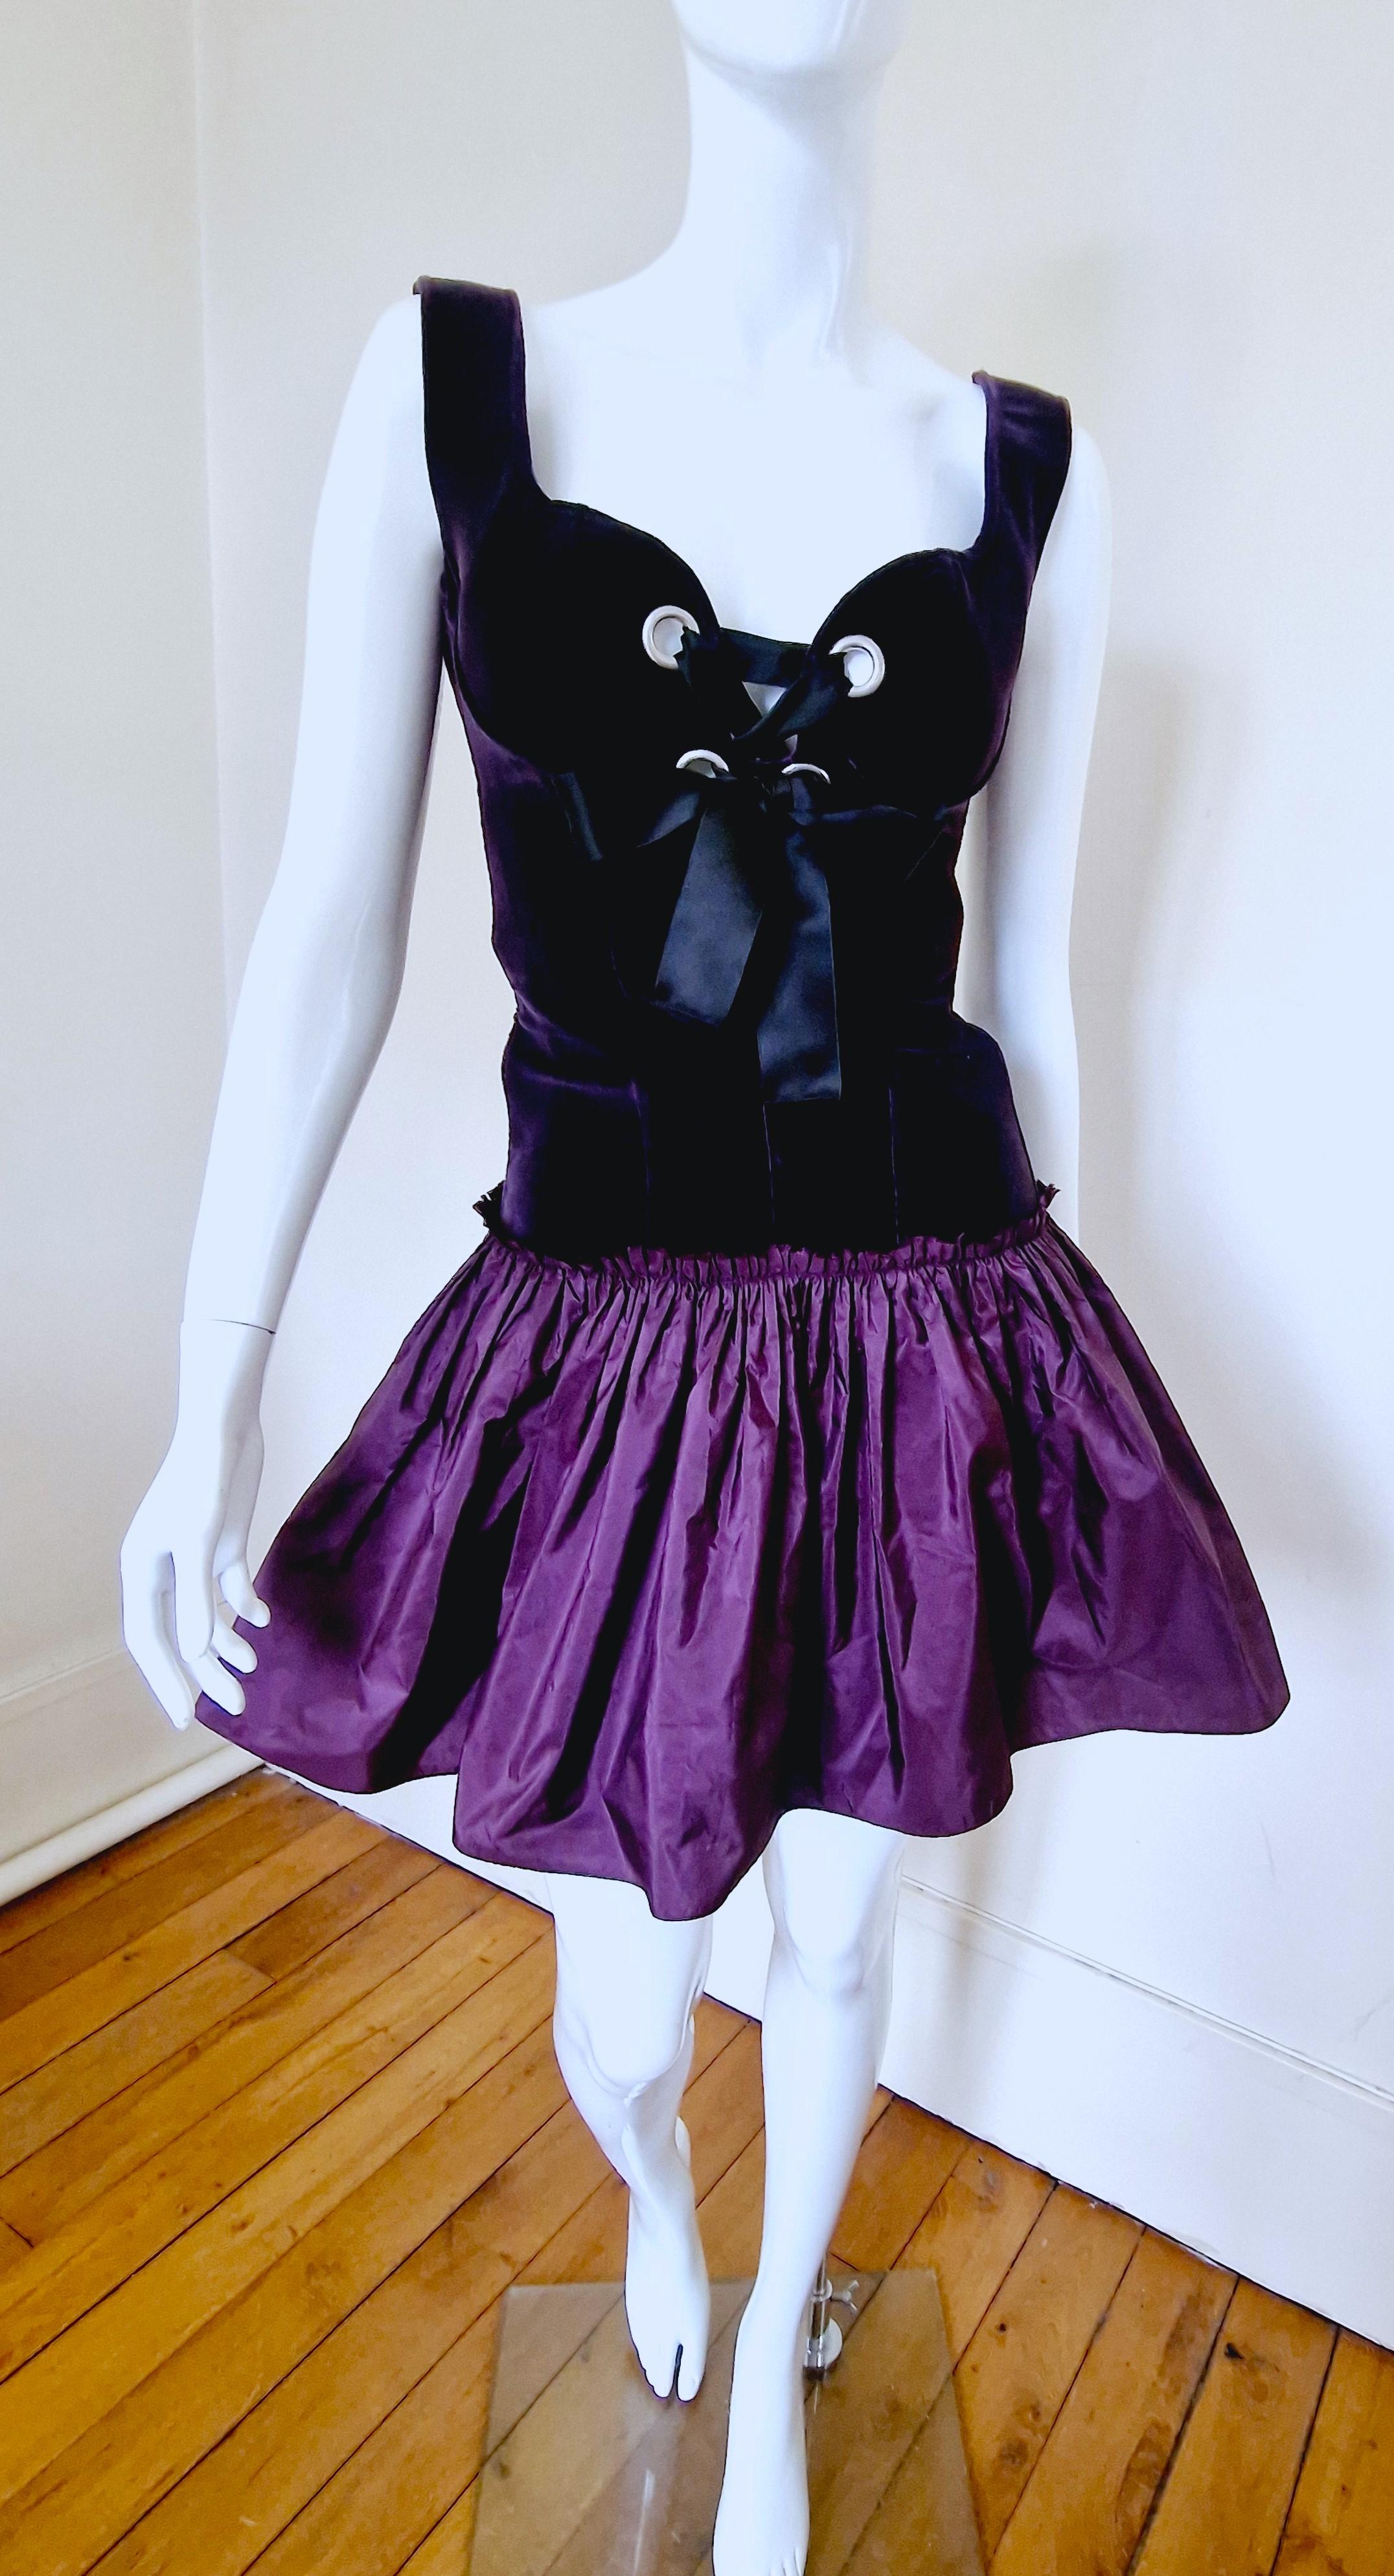 Alexander McQueen Corset Bustier Lace Up Tutu Petticoat Violet Medium Gown Dress For Sale 5